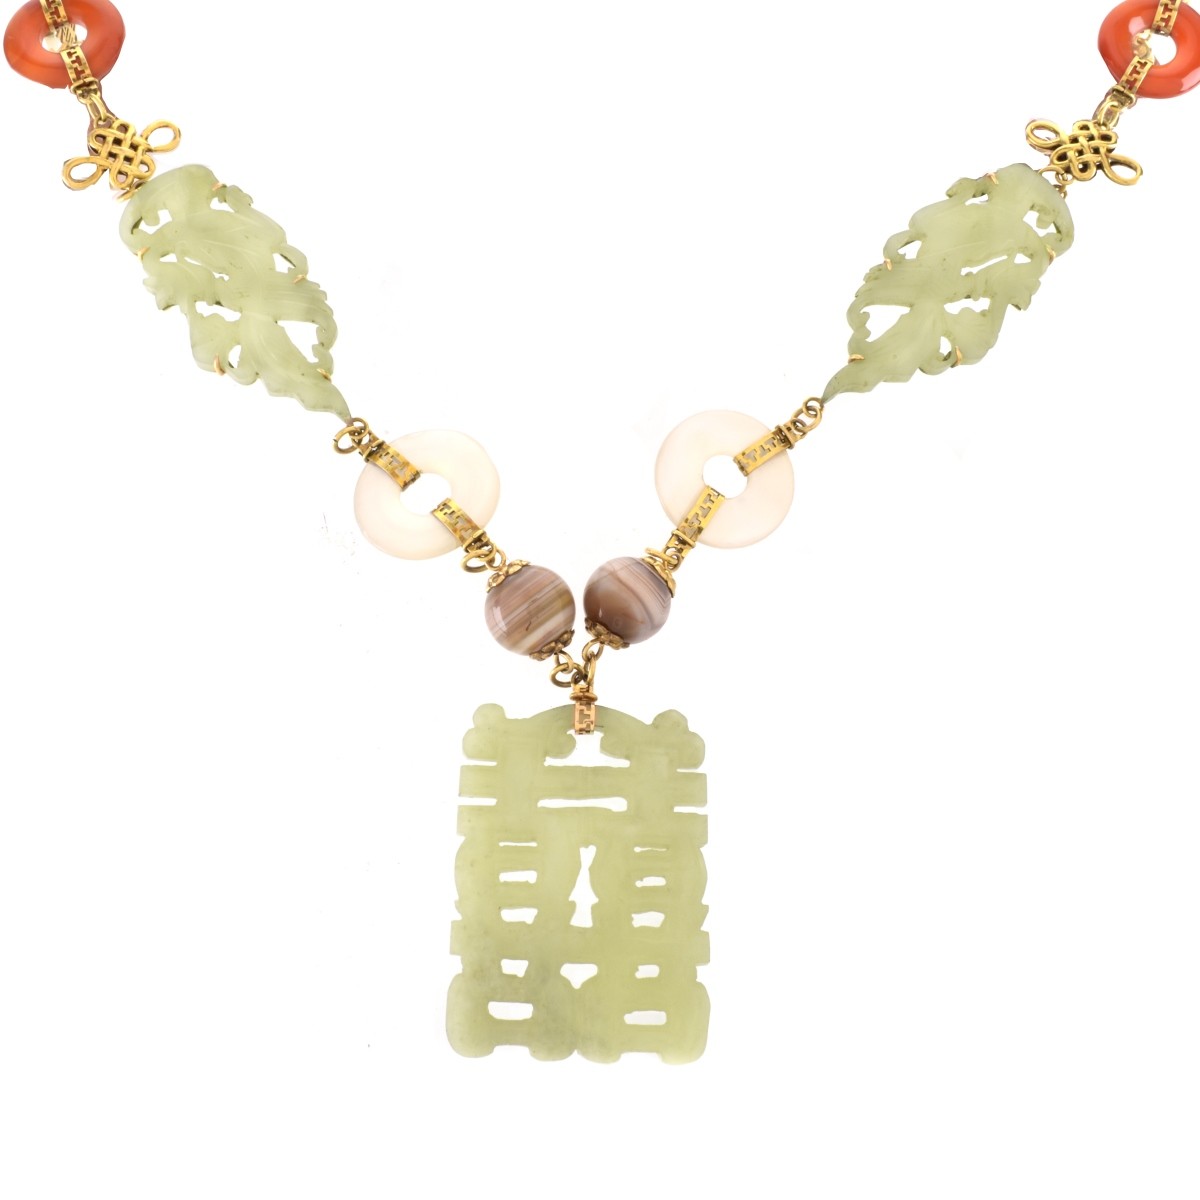 Chinese Hardstone, 14K Necklace